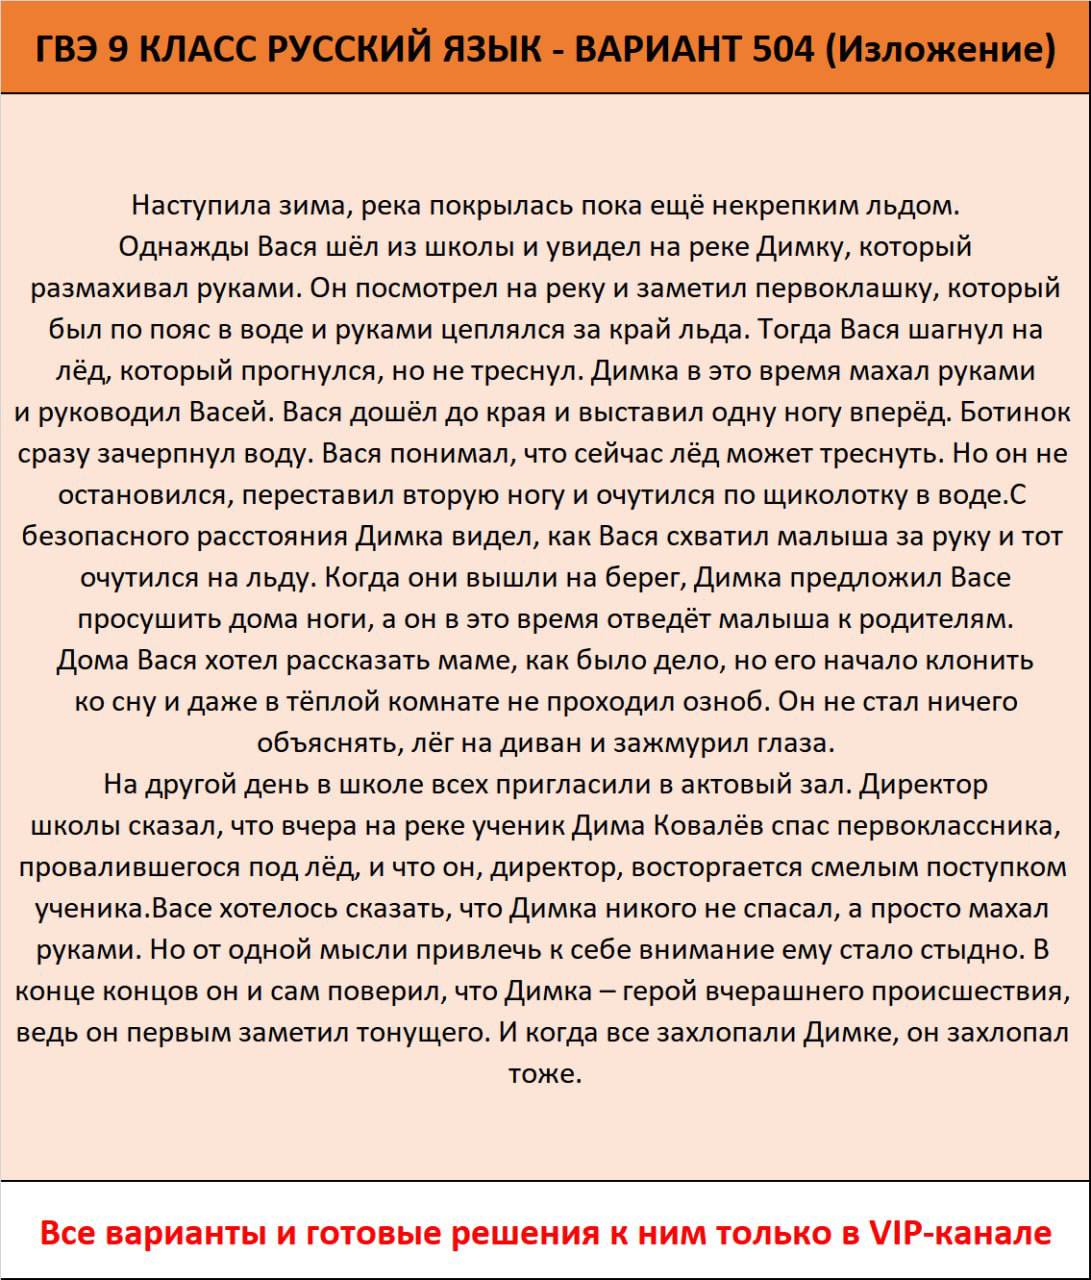 Телеграмм ответы на огэ по русскому языку фото 59